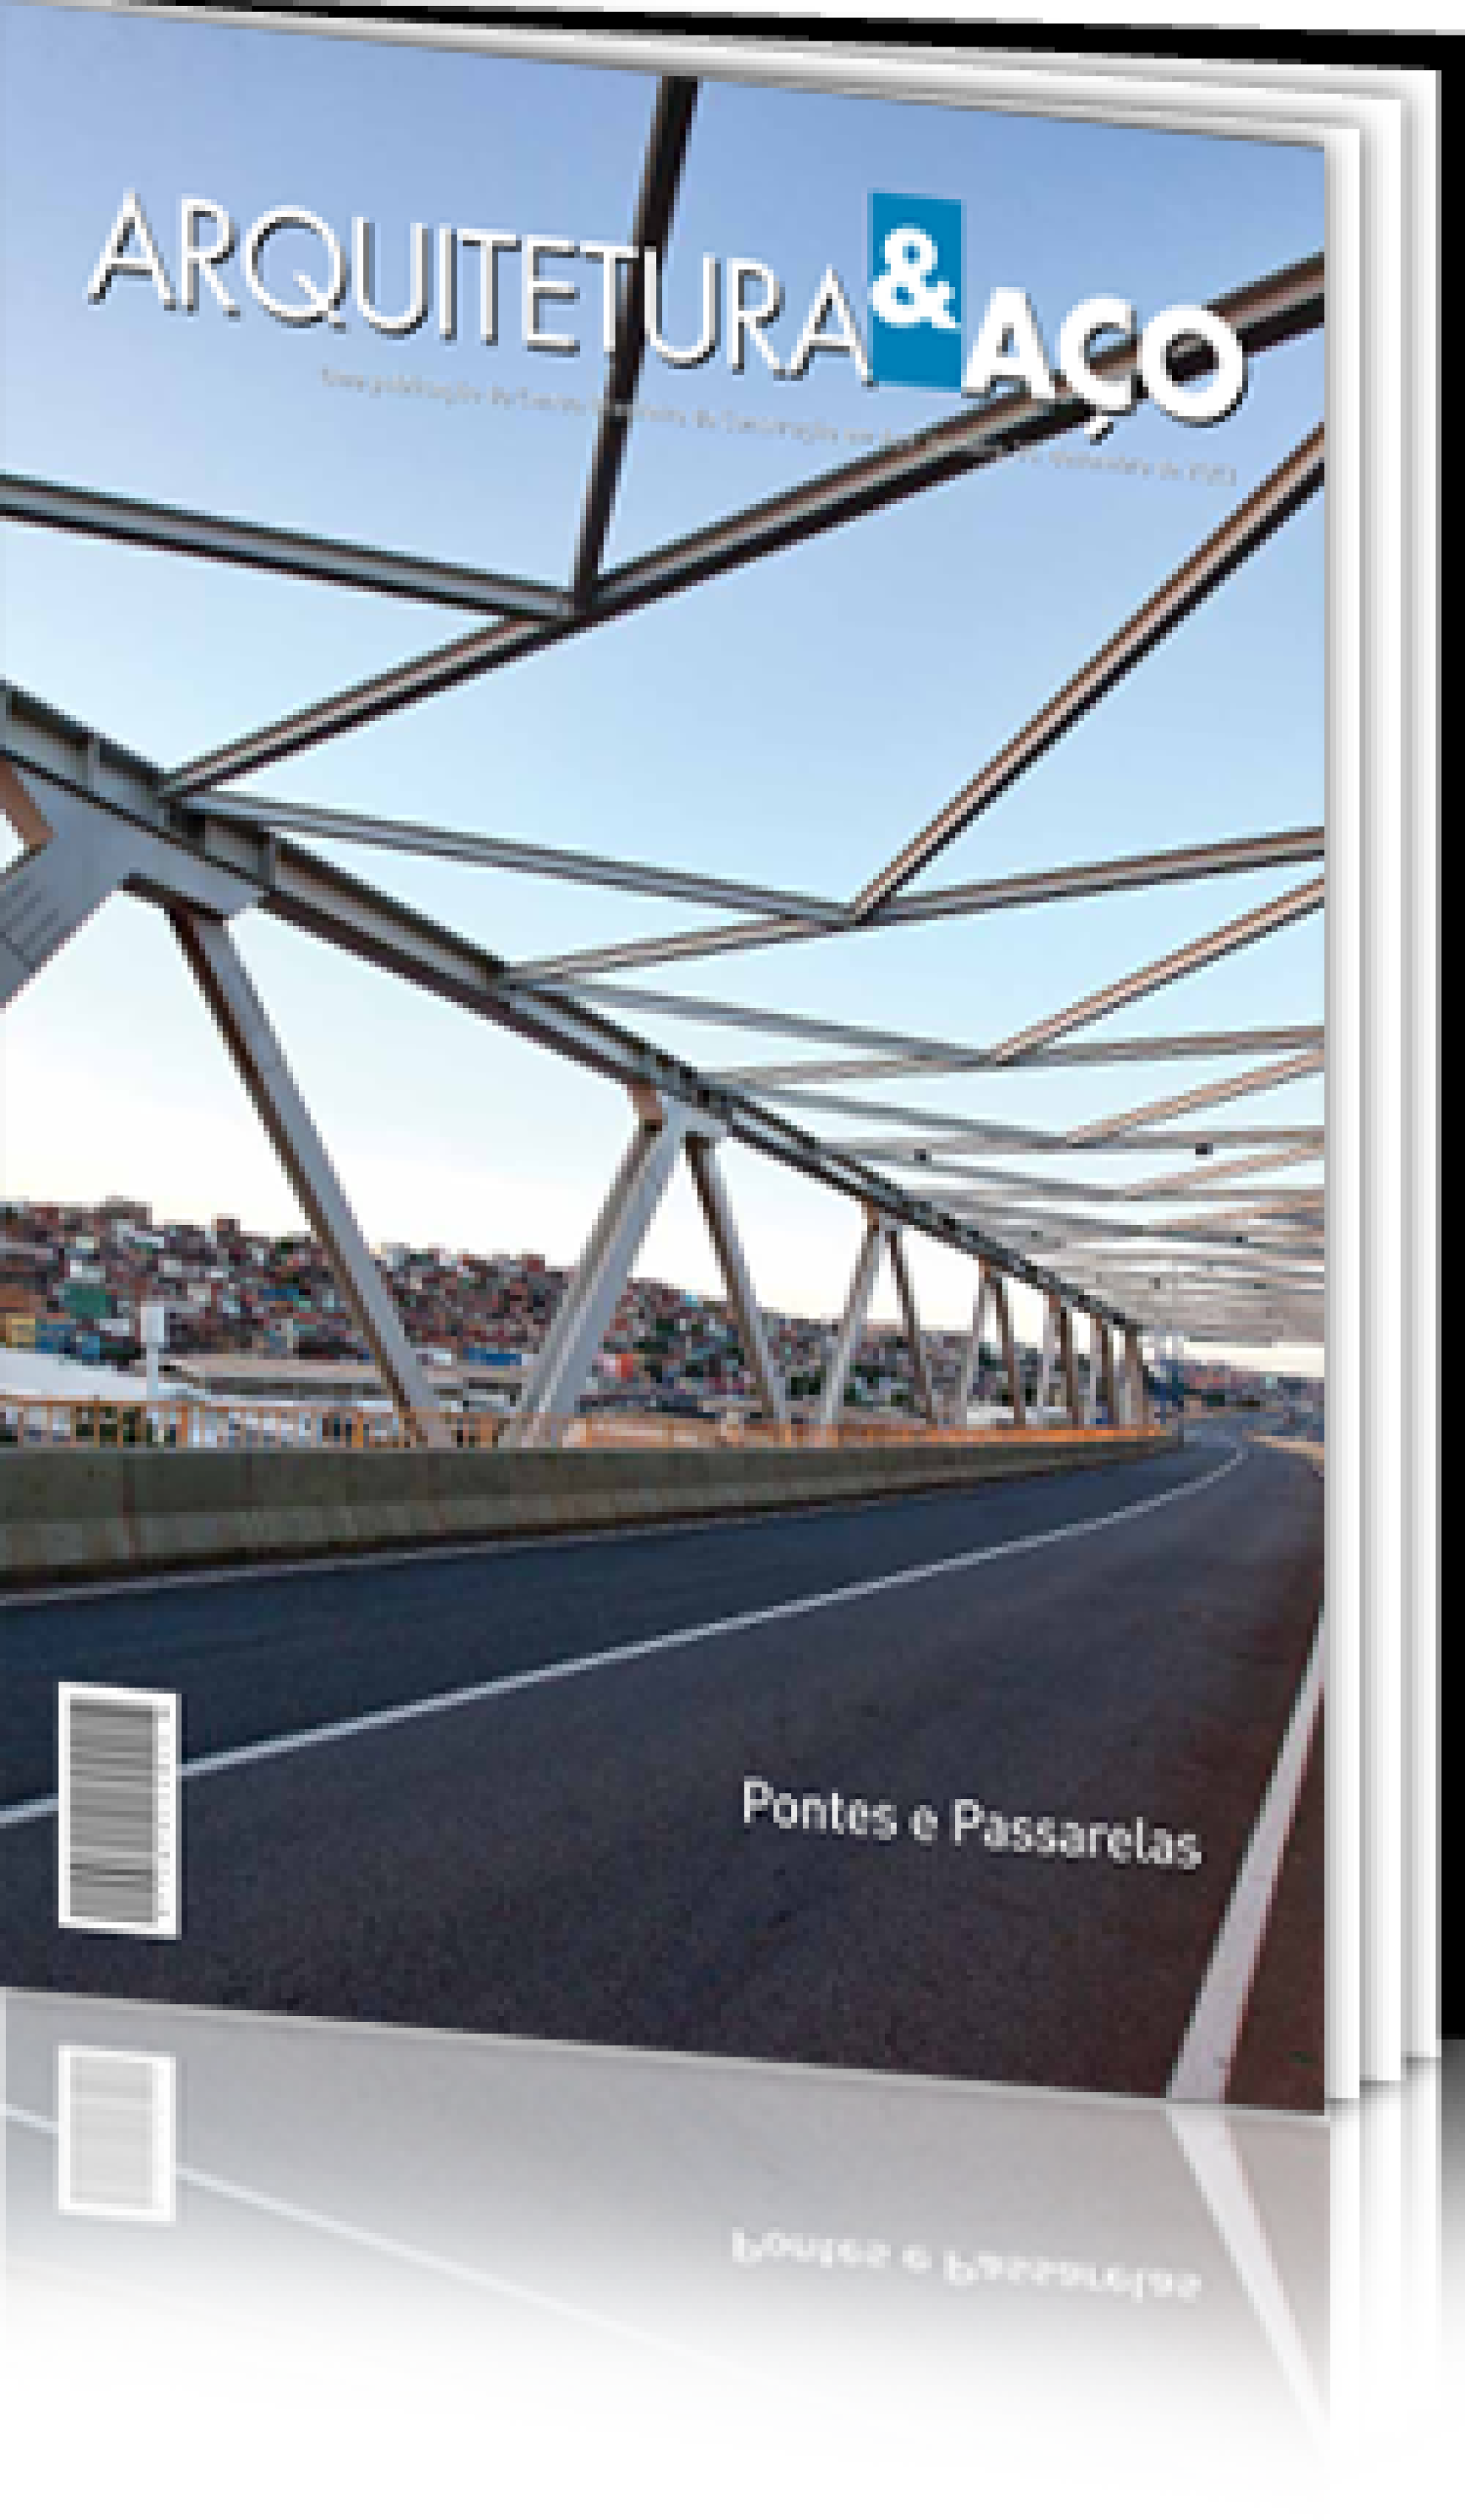 Arquitetura & Aço nº 36 - Pontes e Passarelas